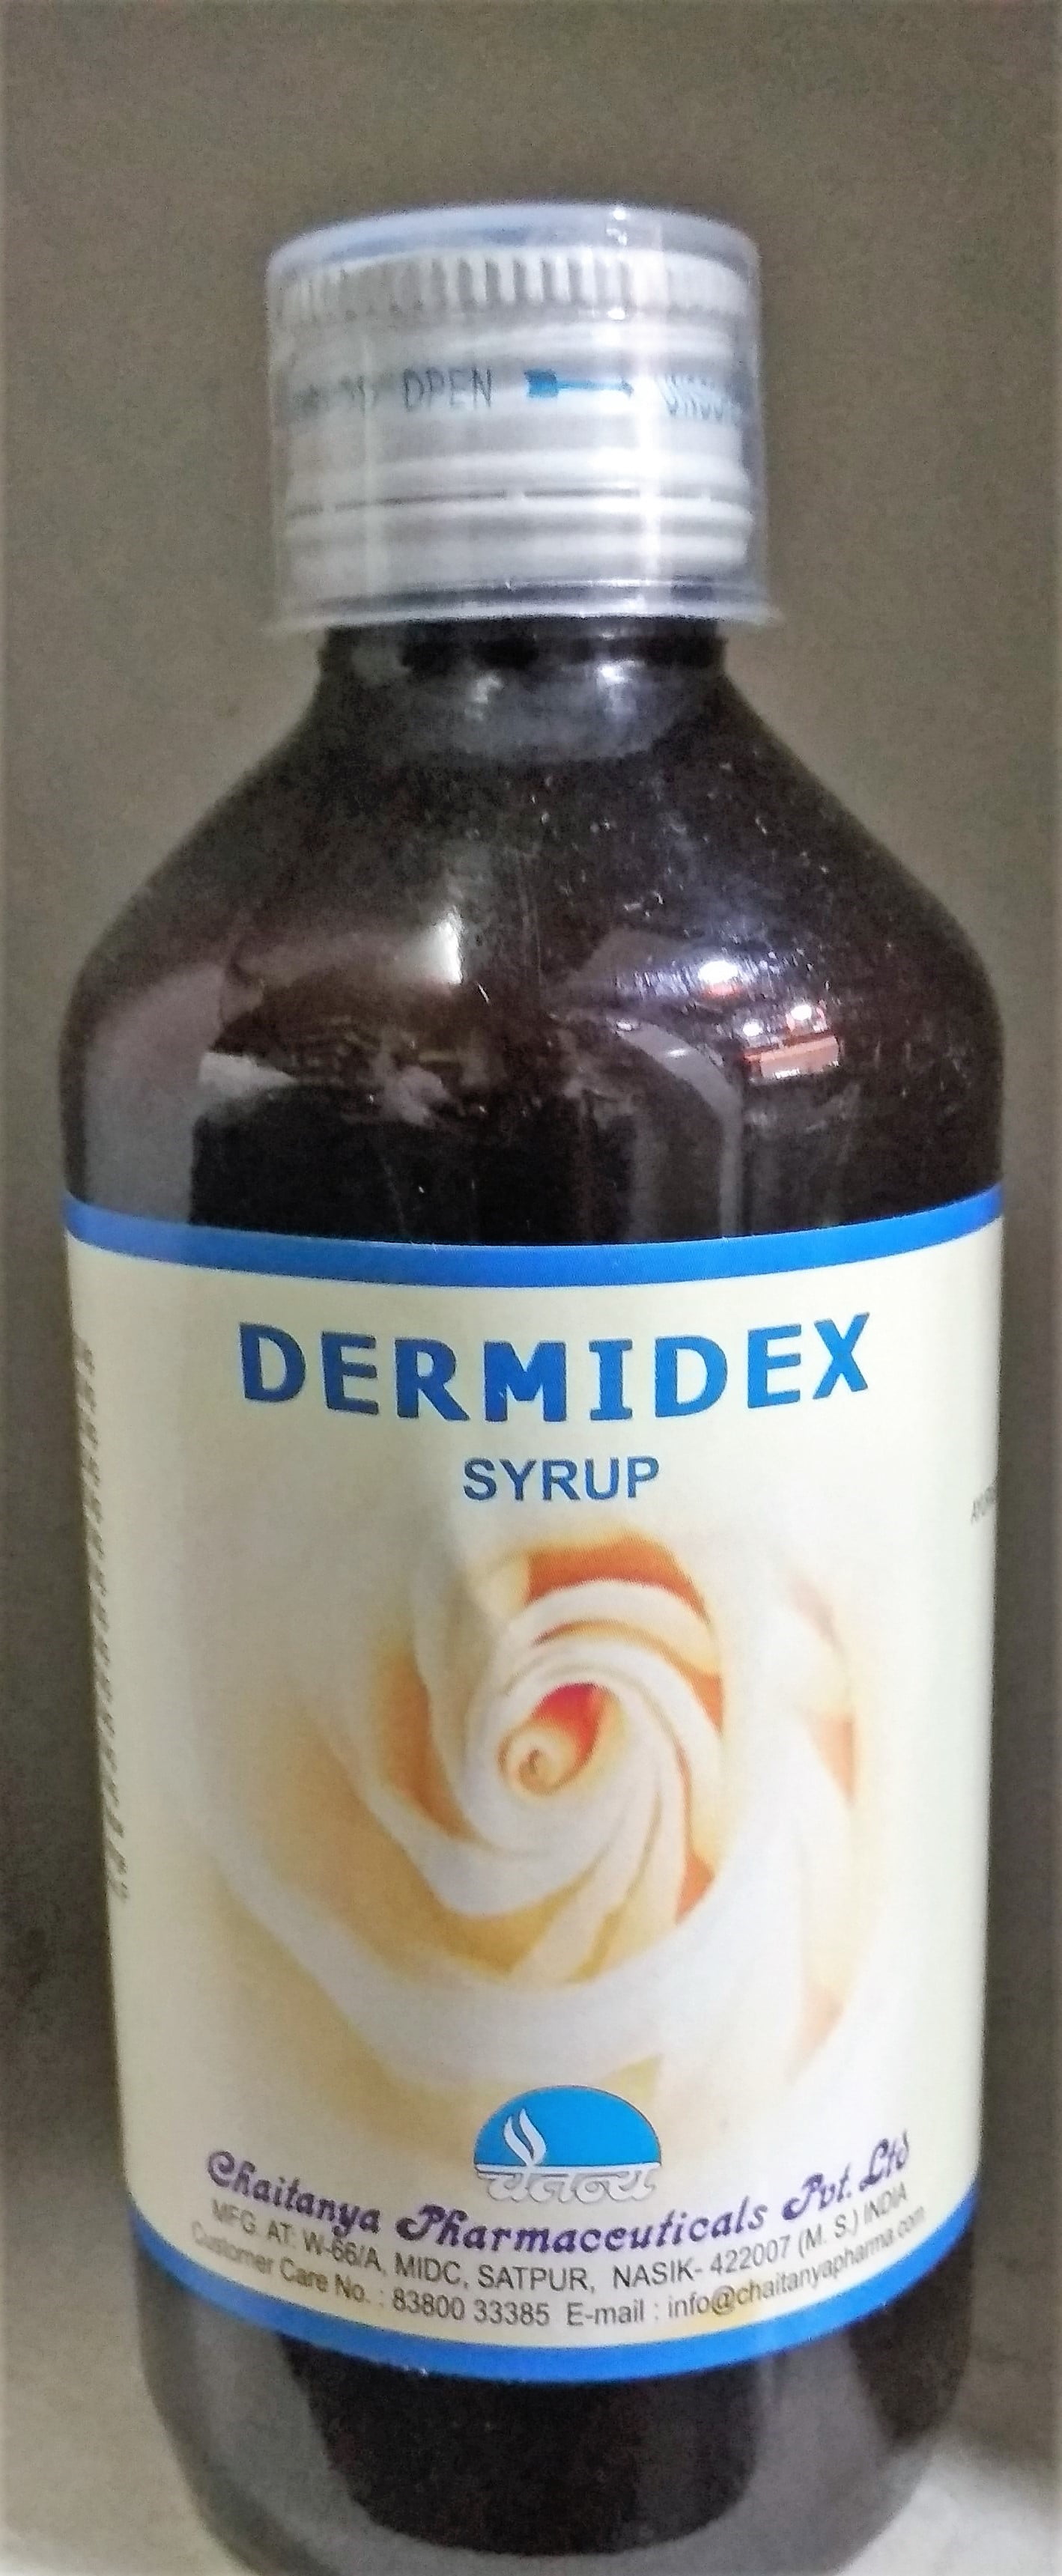 dermidex syrup 200 ml chaitanya pharmaceuticals